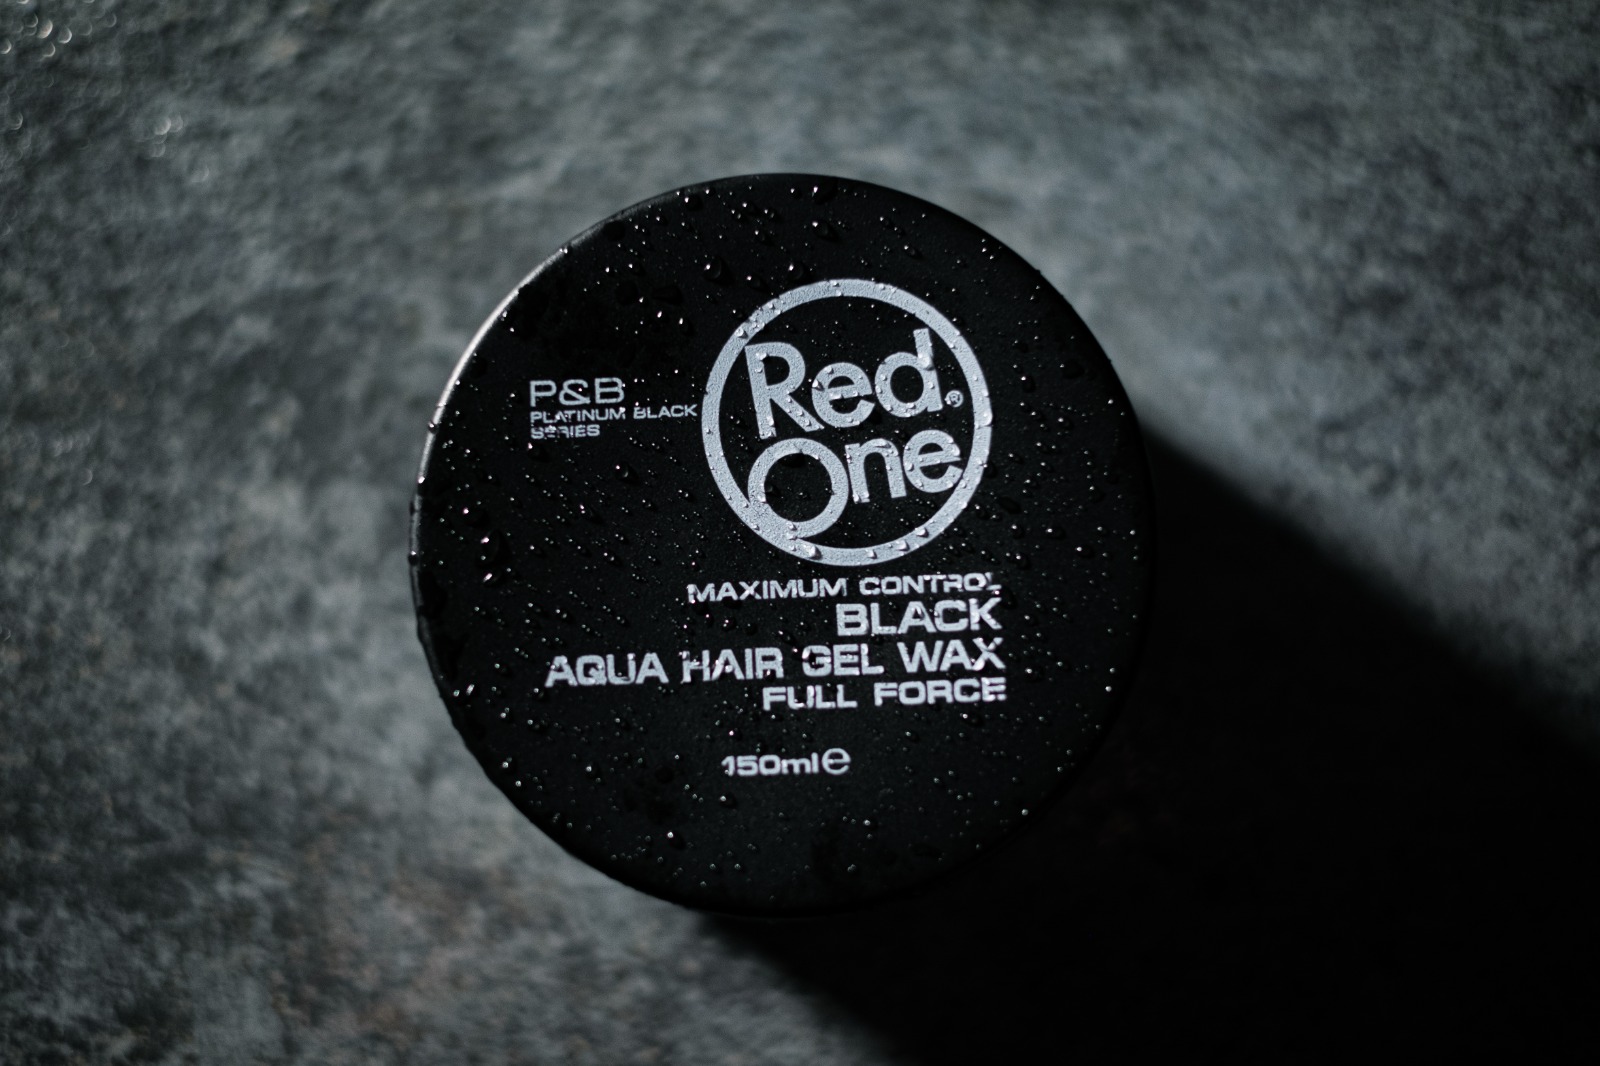 Red One Aqua Hair Wax 150ml